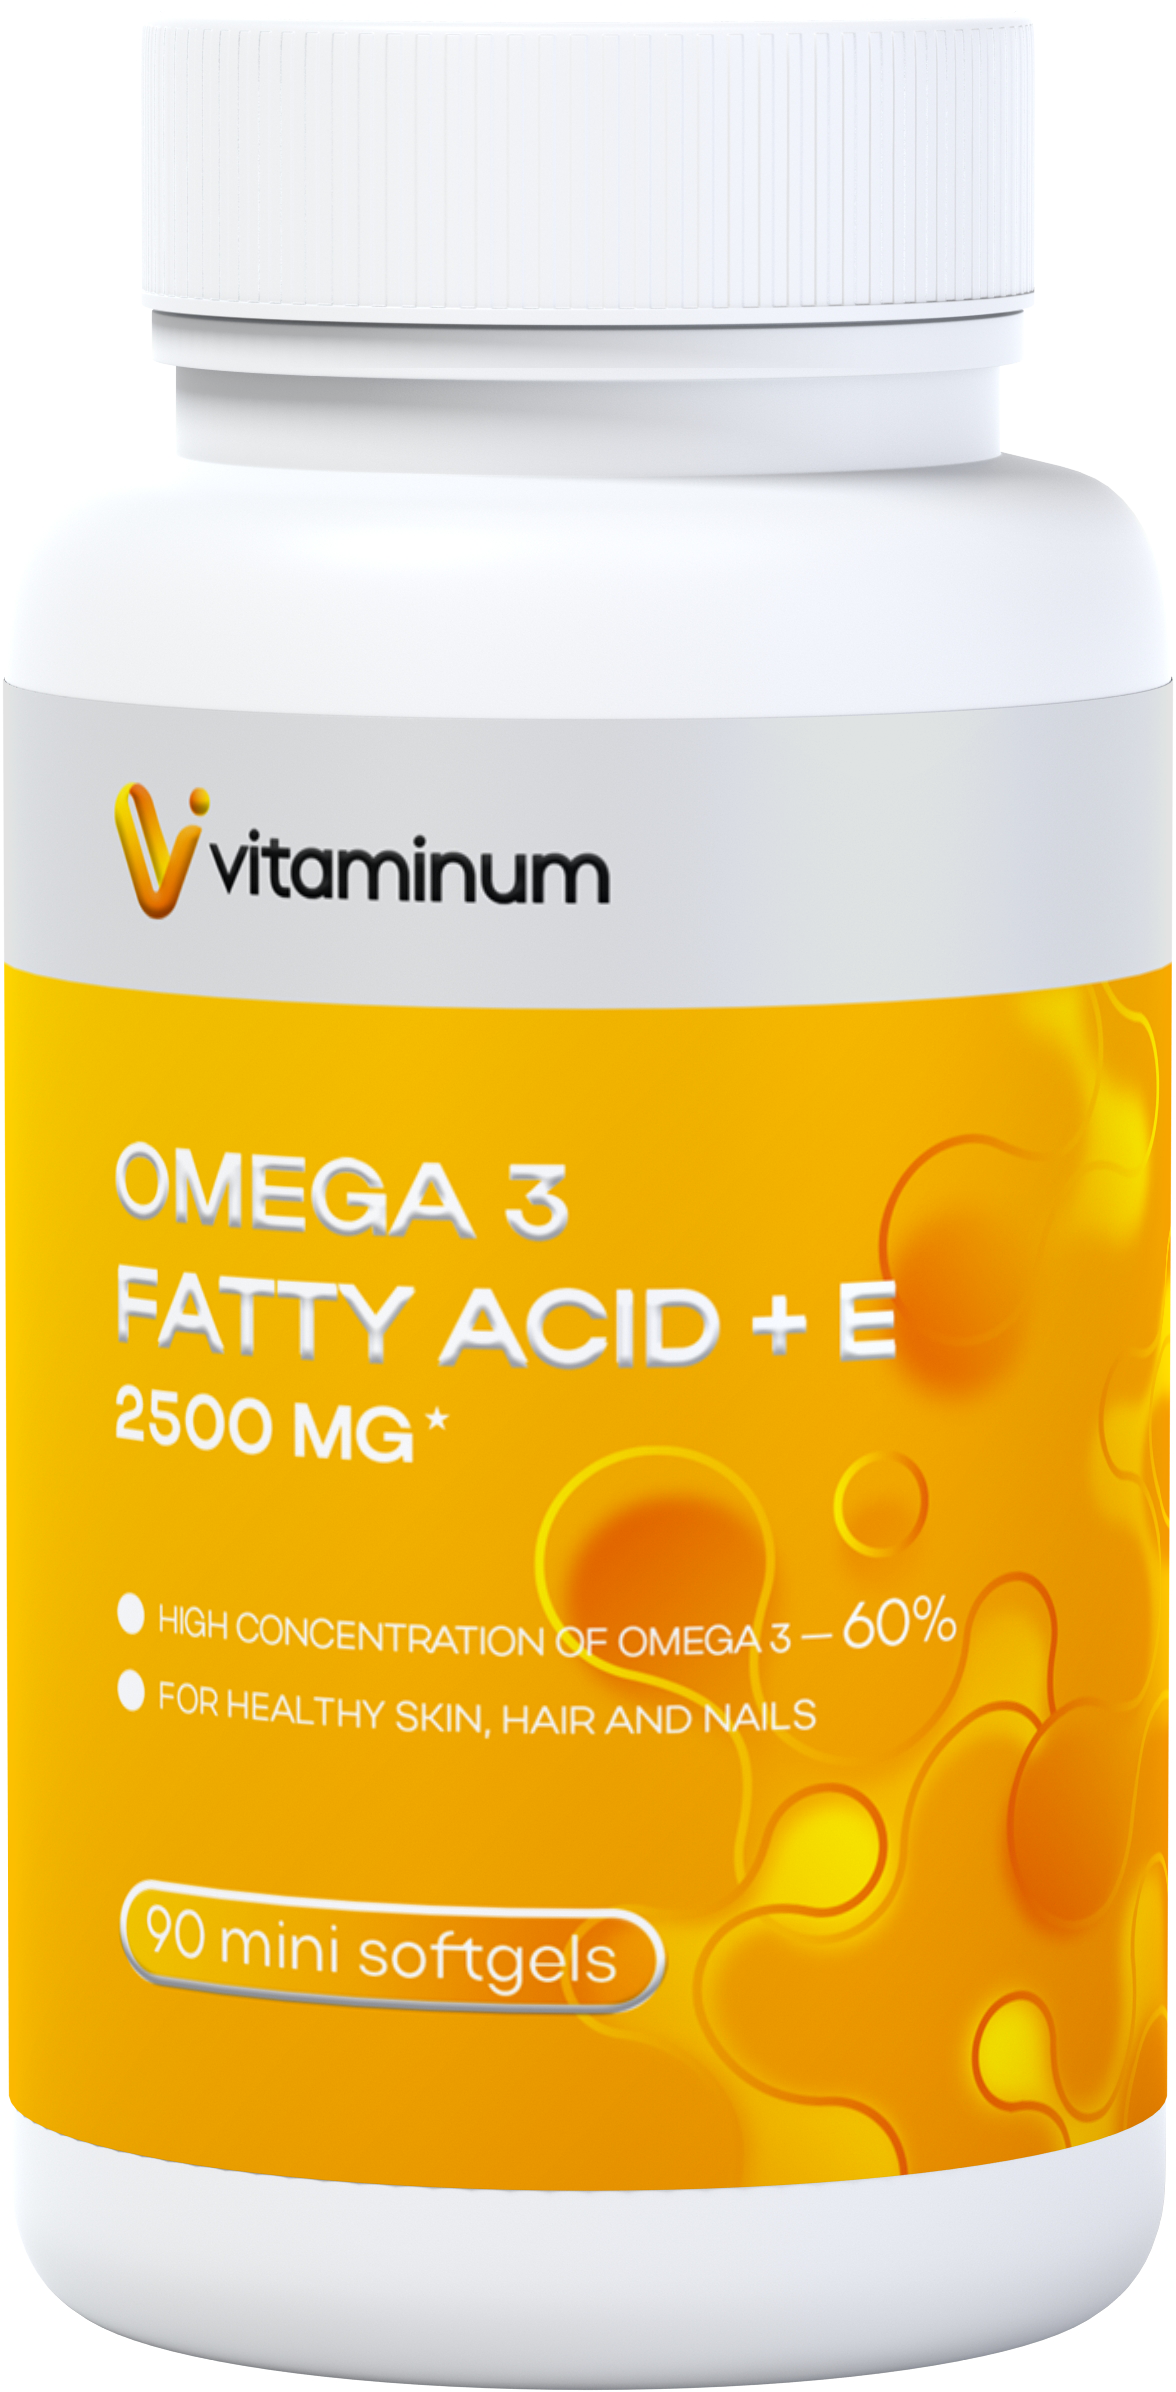  Vitaminum ОМЕГА 3 60% + витамин Е (2500 MG*) 90 капсул 700 мг  в Мурманске